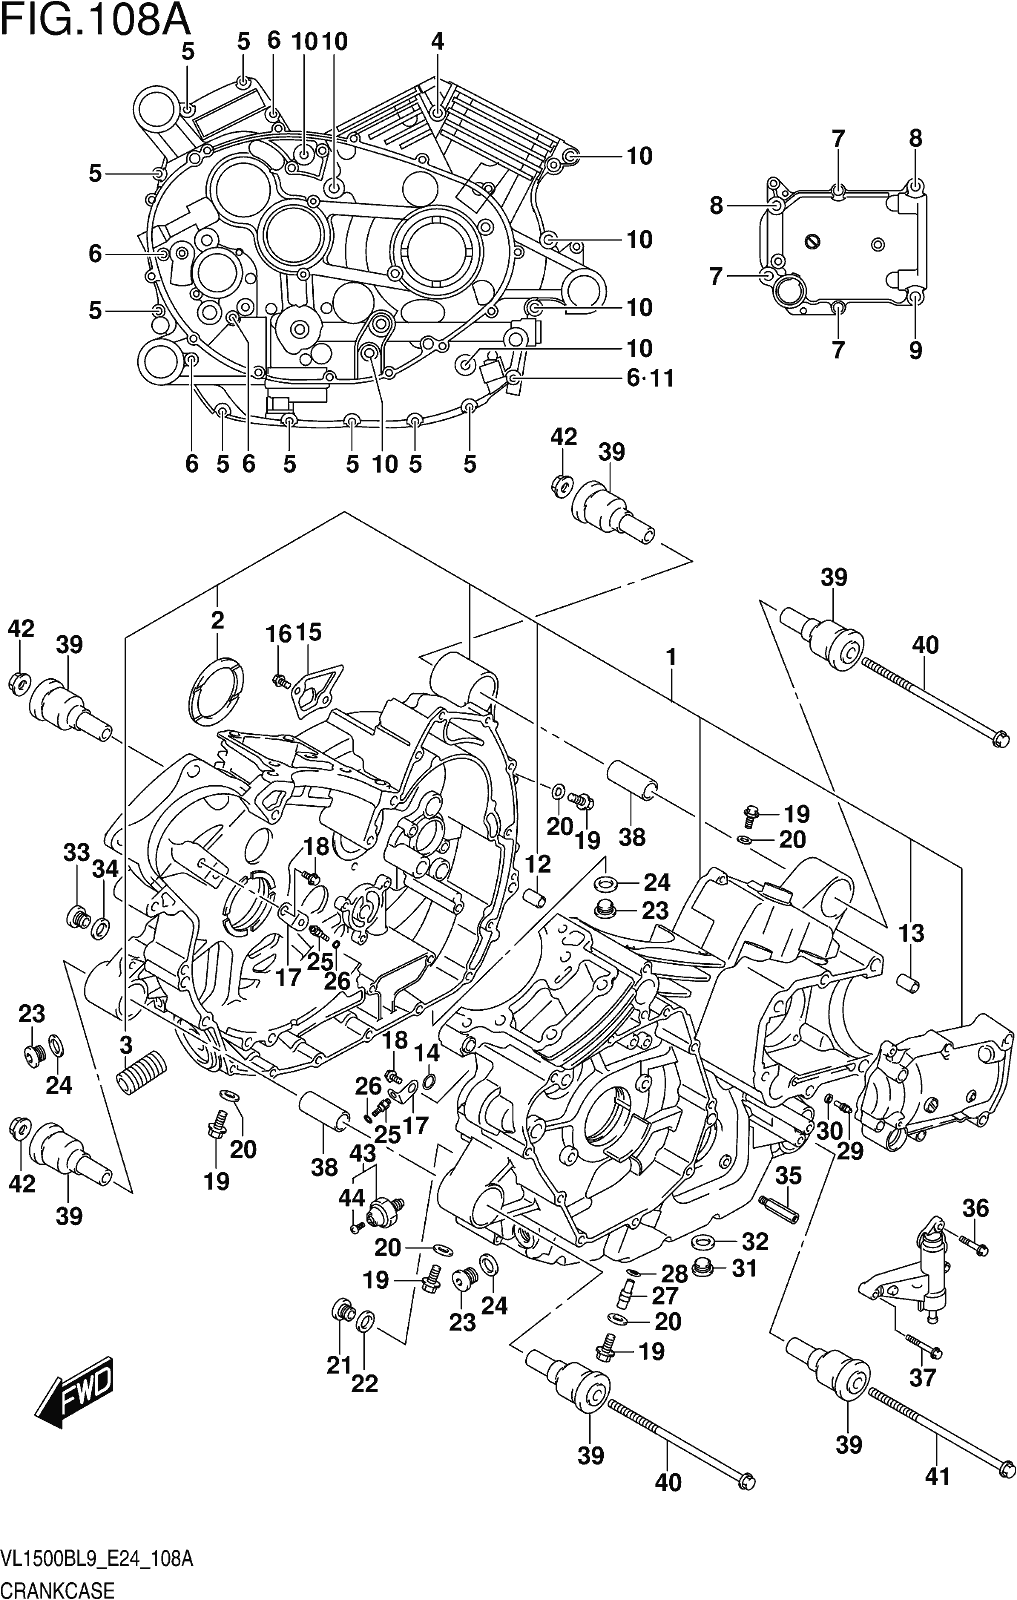 Alle Teile für das Fig. 108a Crankcase des Suzuki VL 1500B 2019